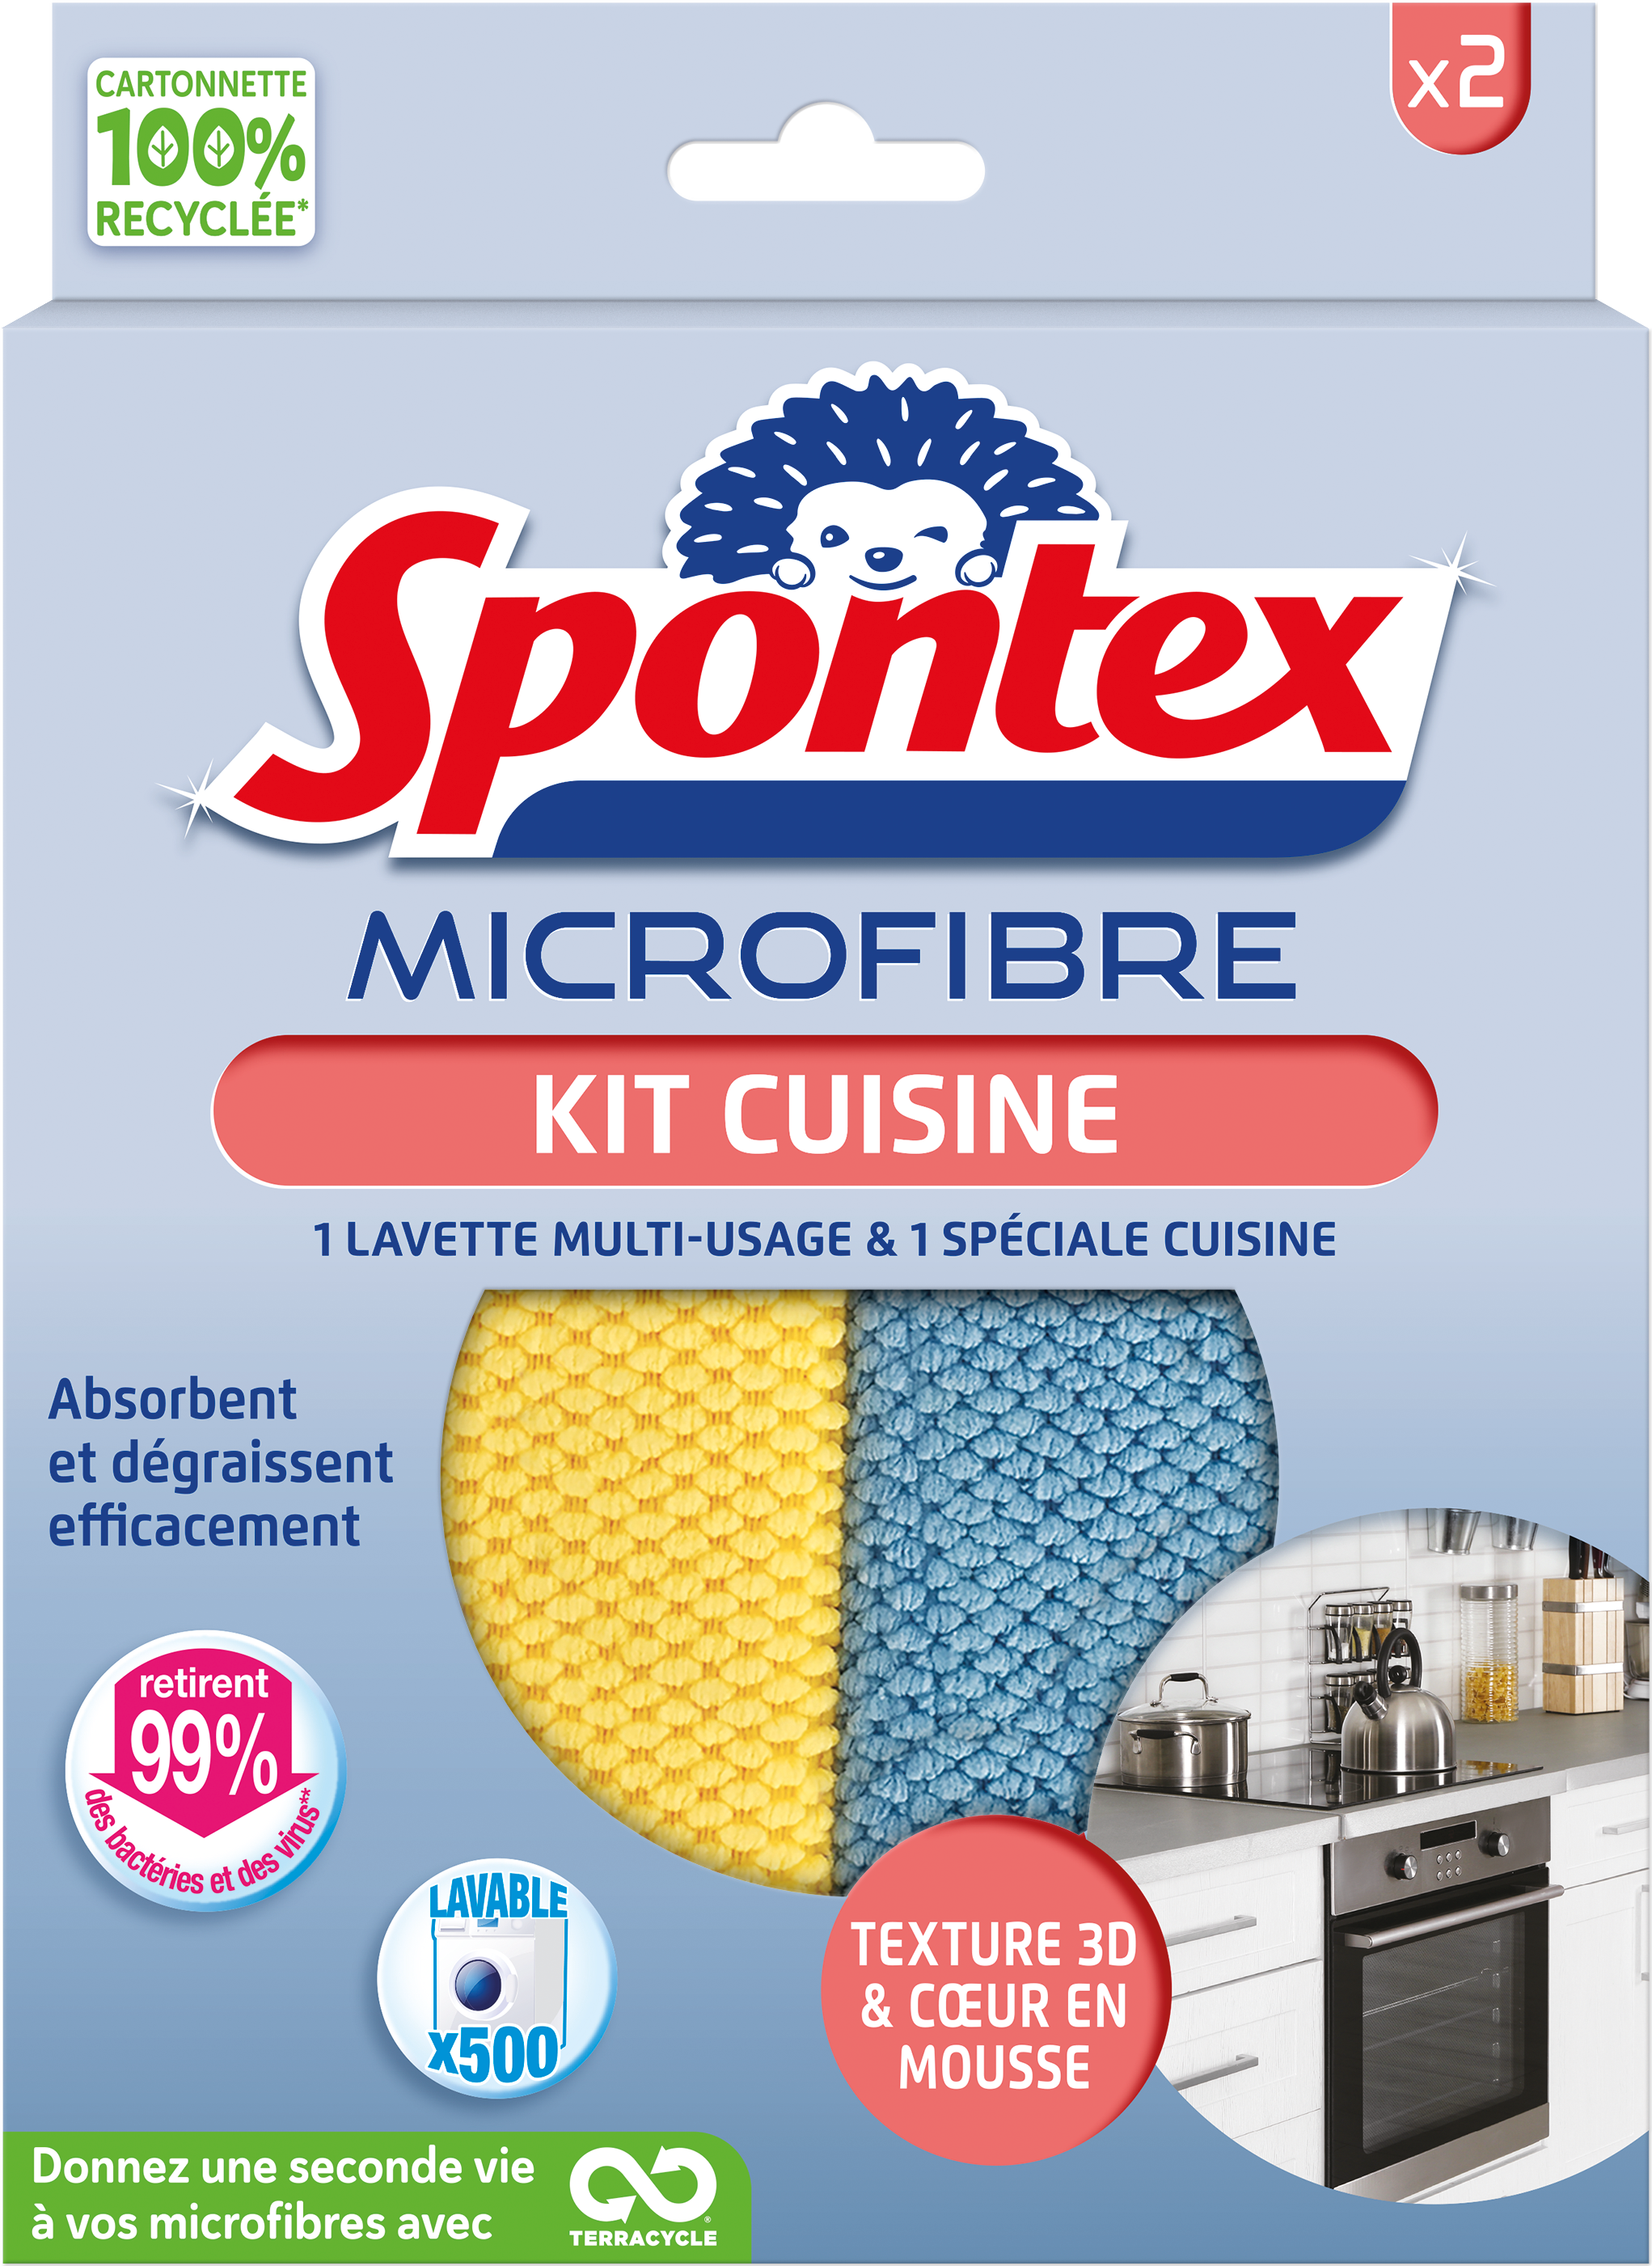 Lavette de cuisine miracle Spontex 3D en microfibres - Chiffon de nettoyage  - Idéal pour le nettoyage de la cuisine - Lot de 2